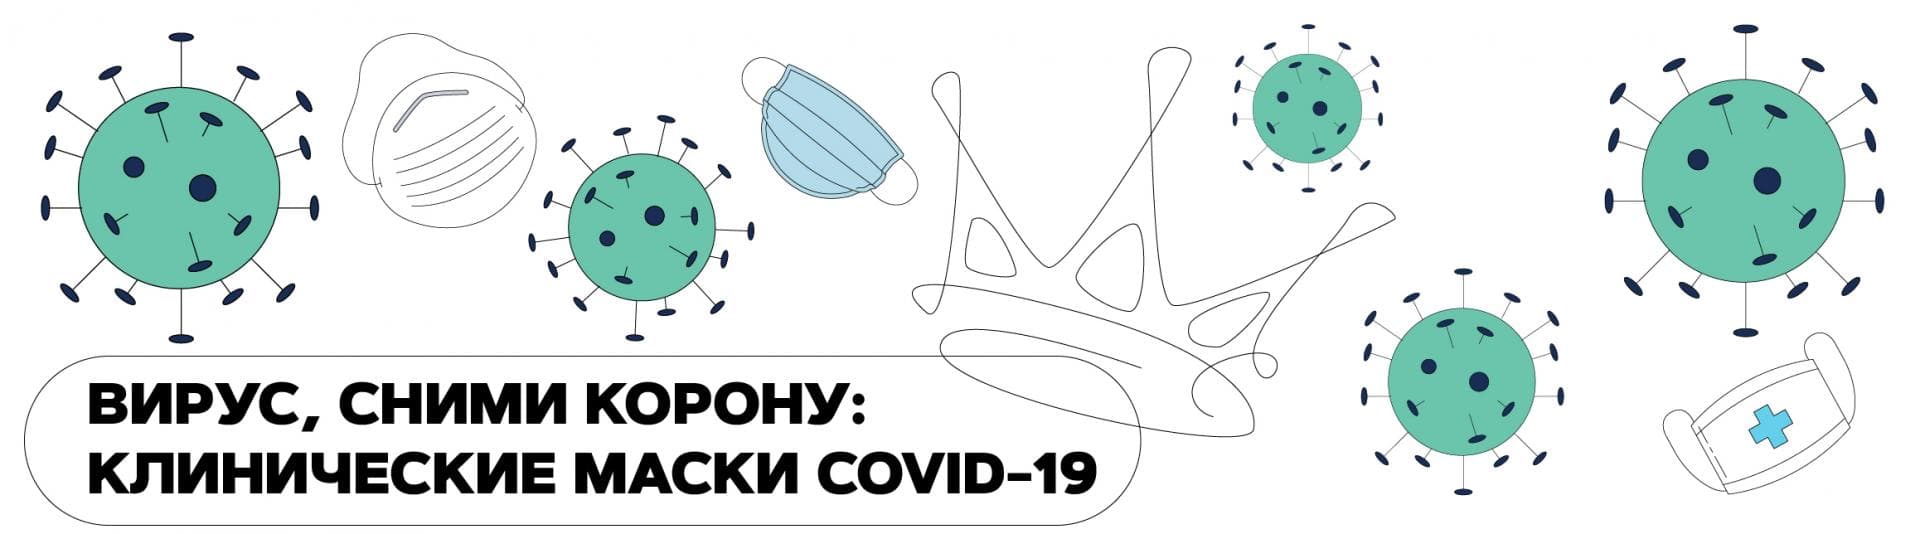 Вирус, сними корону: клинические маски COVID-19